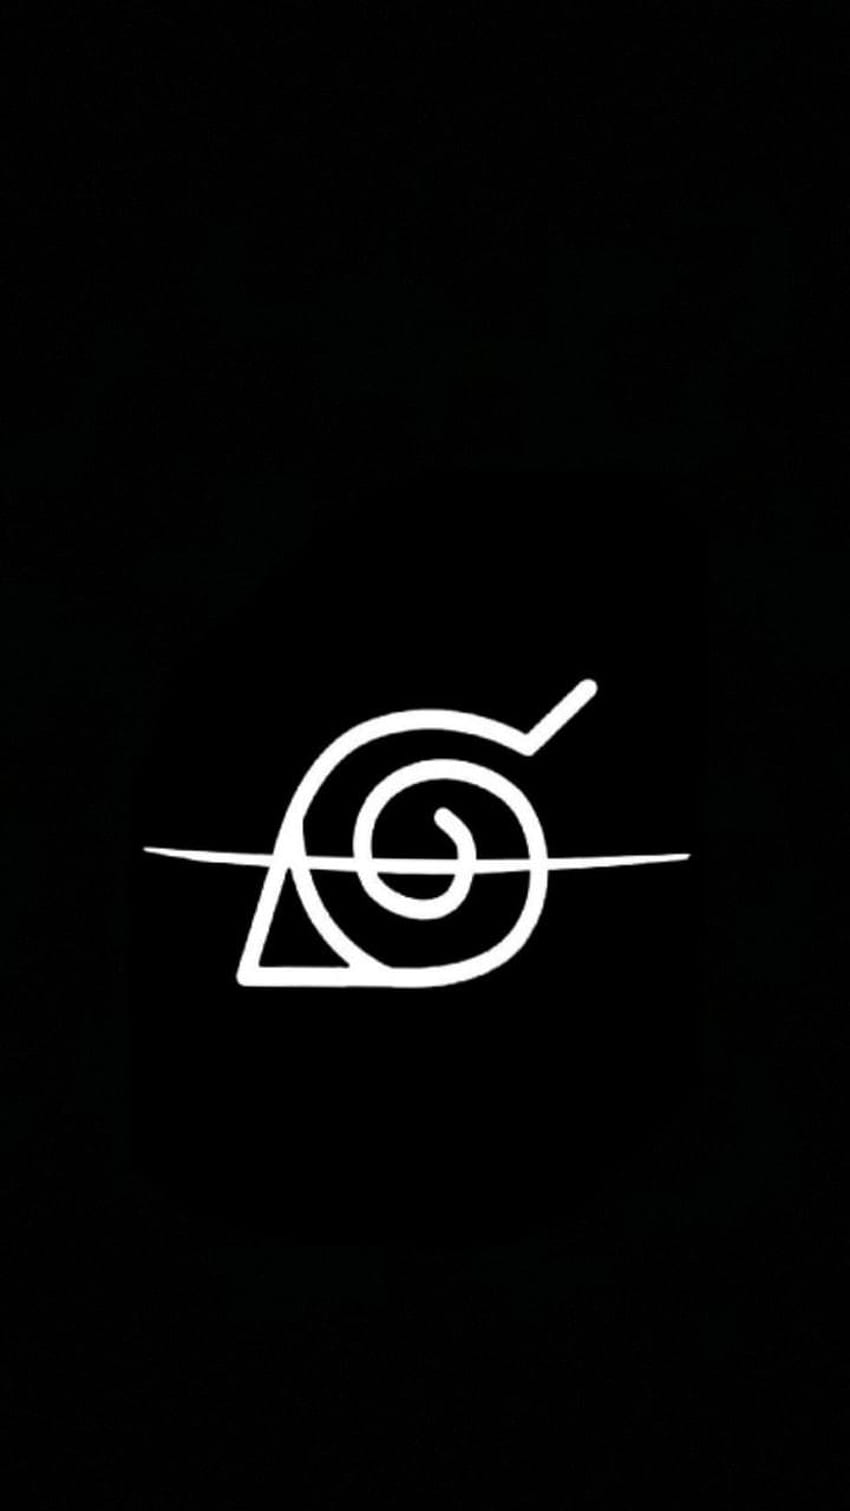 Teléfono con el logotipo de Konoha, símbolo de la aldea de Naruto fondo de pantalla del teléfono